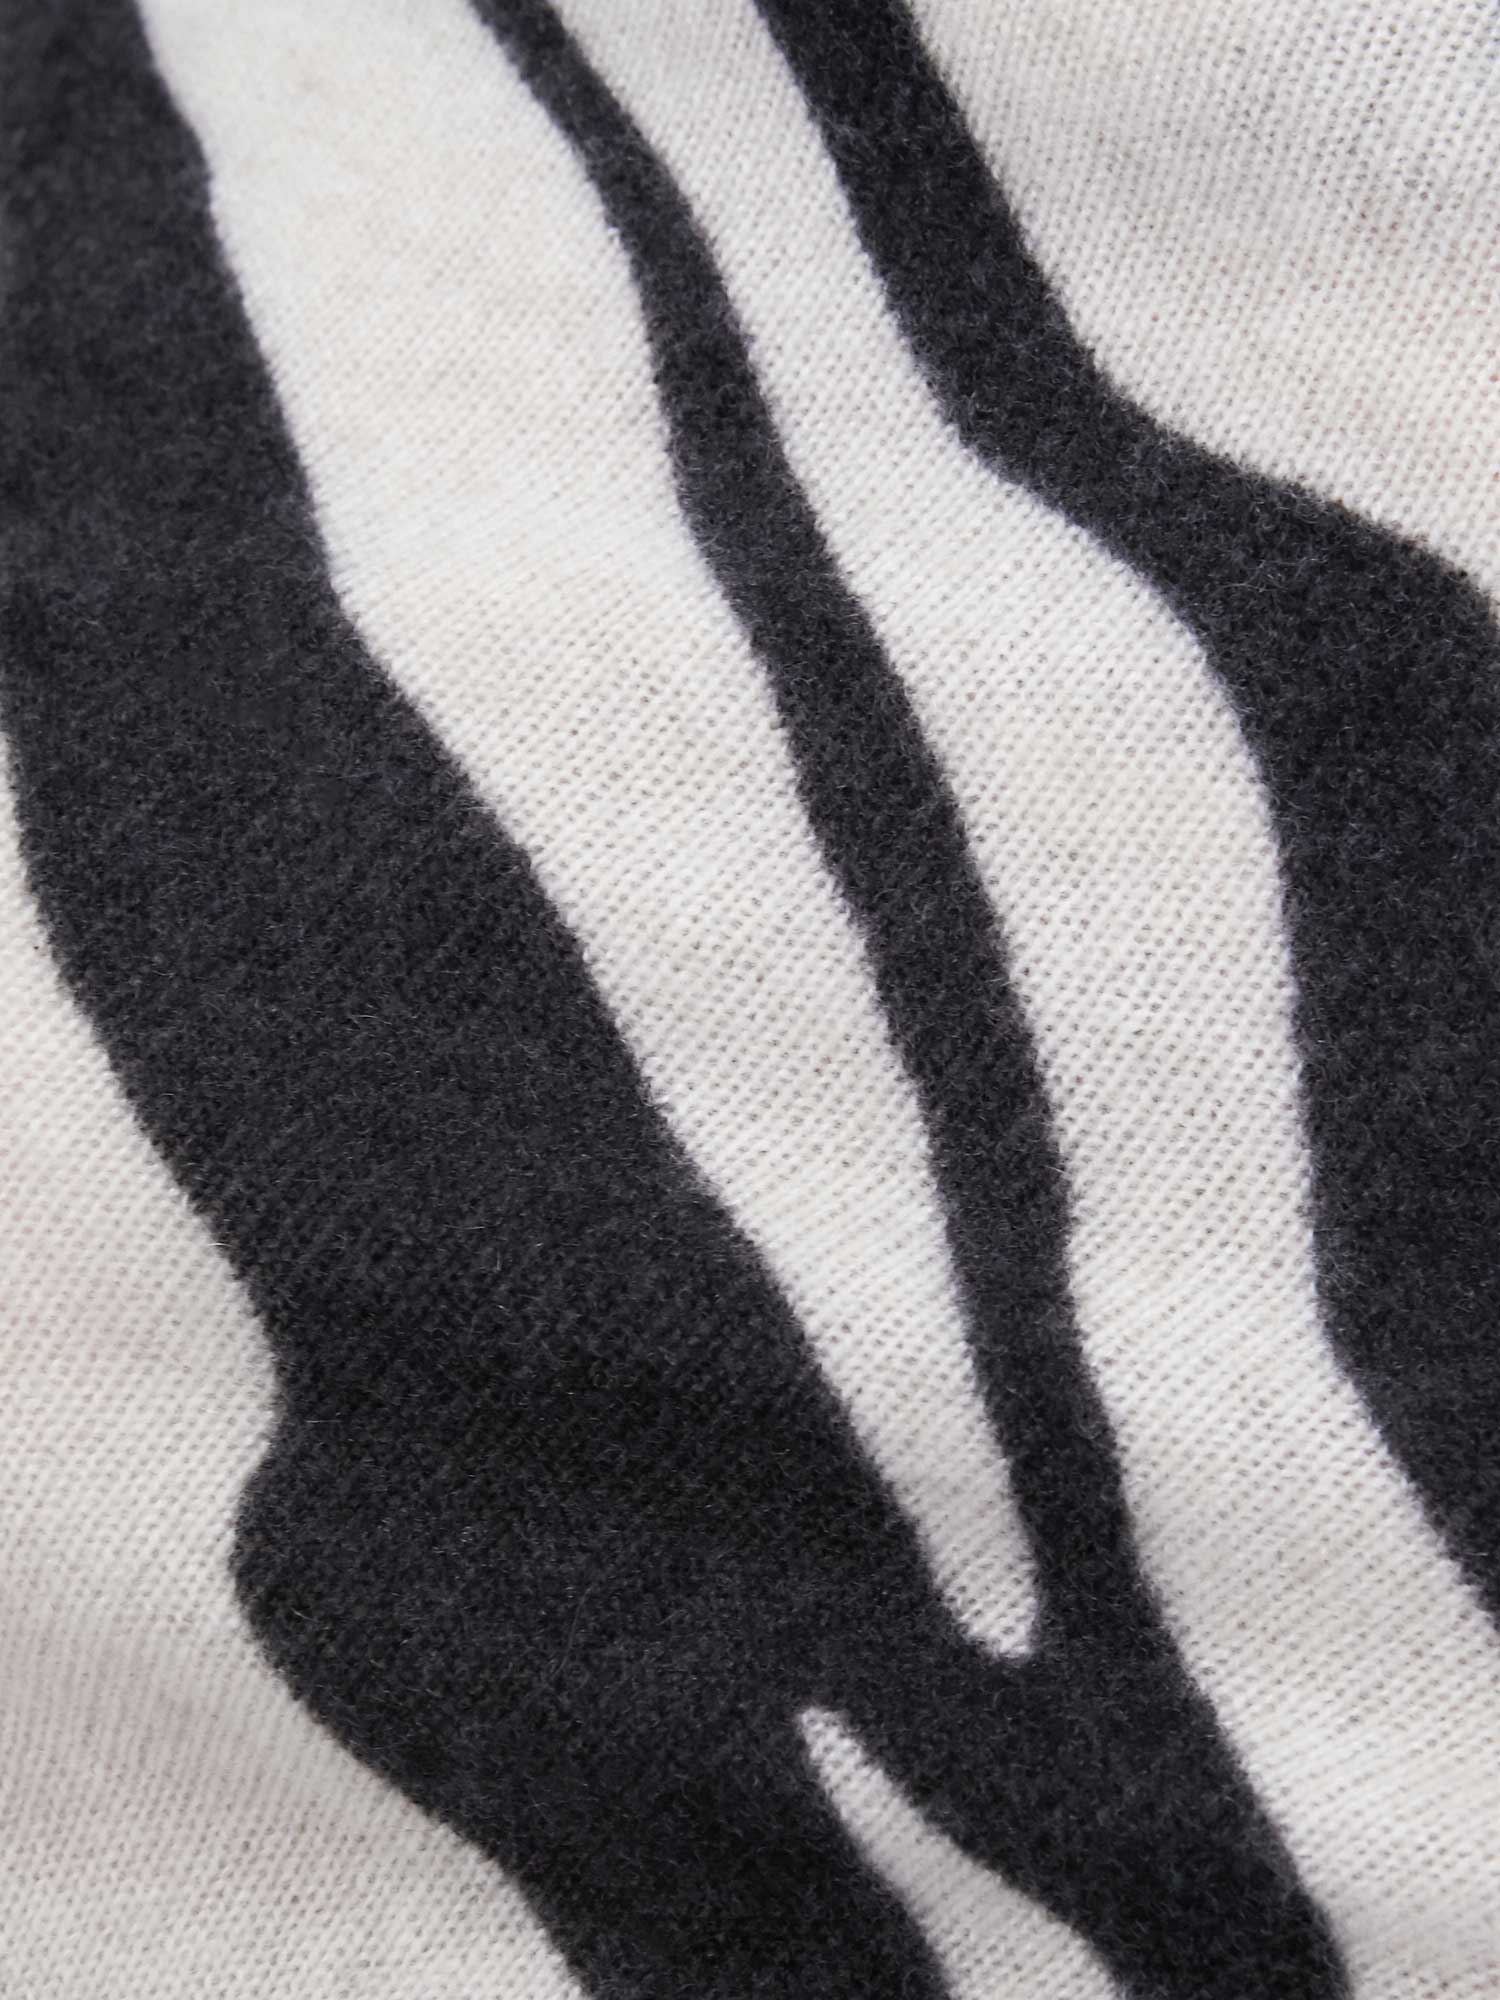 Lori cashmere off shoulder zebra print sweater close up